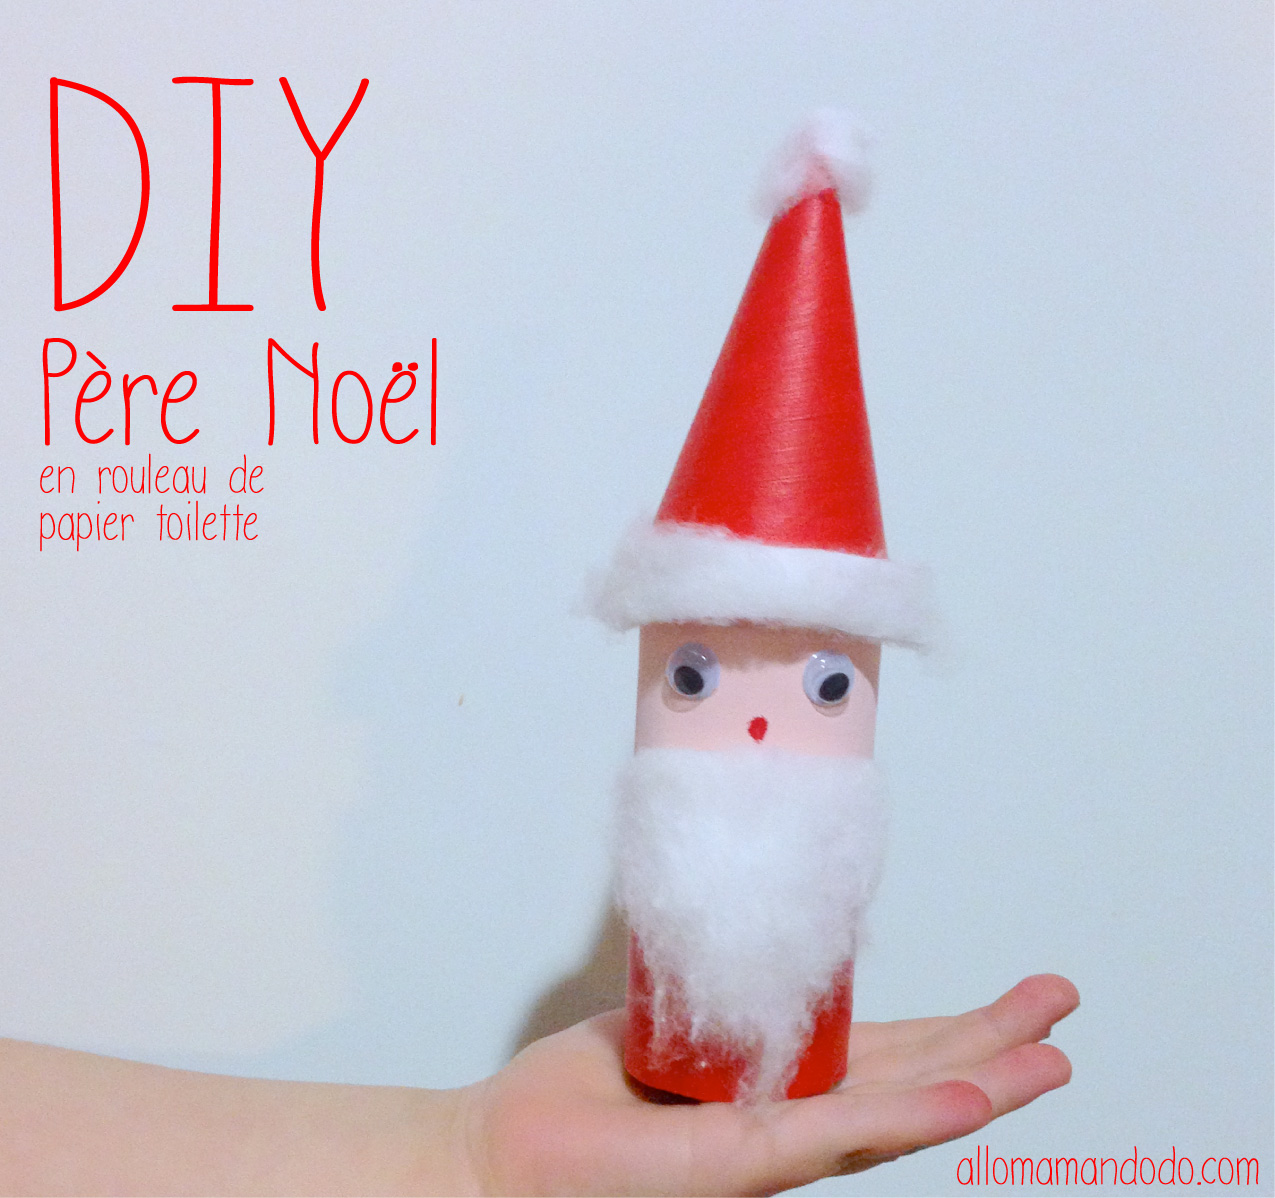 DIY Père Noël, super activité pour les enfants! (rouleau de papier toilette)  - Allo Maman Dodo